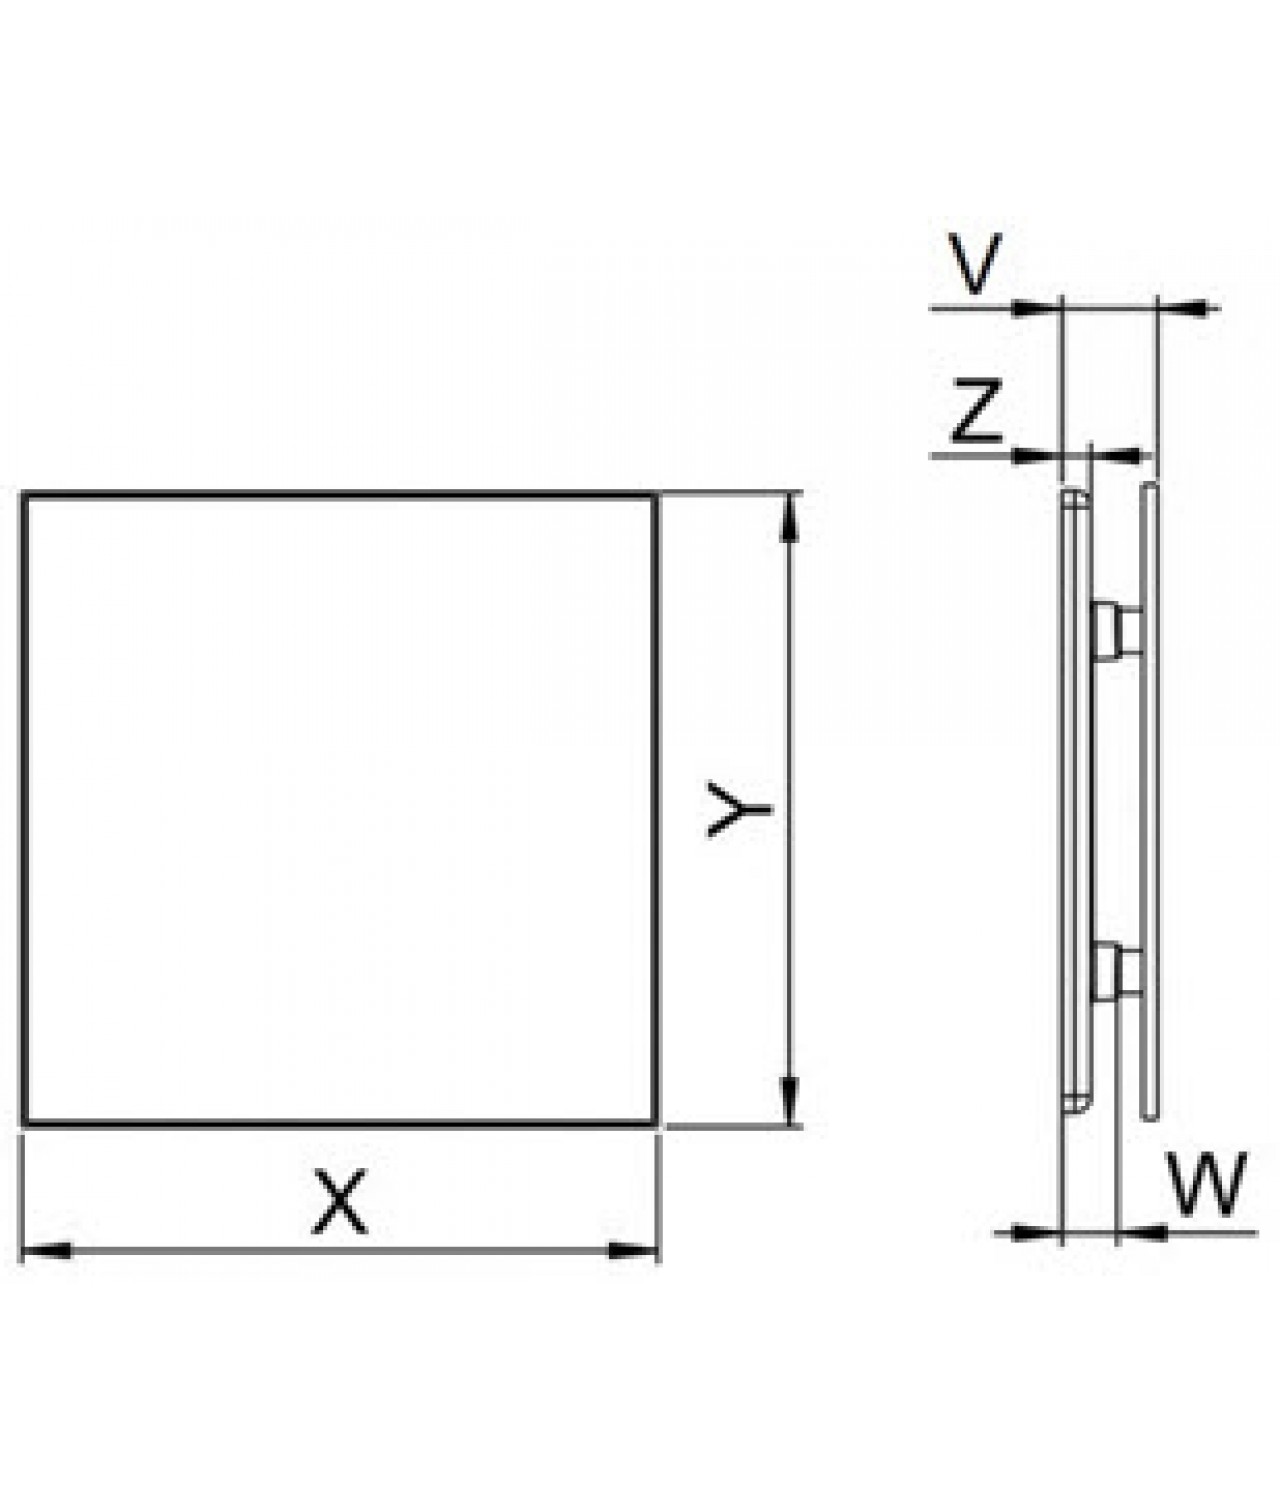 Интерьерная панель PTB125 - TRAX white, чертеж